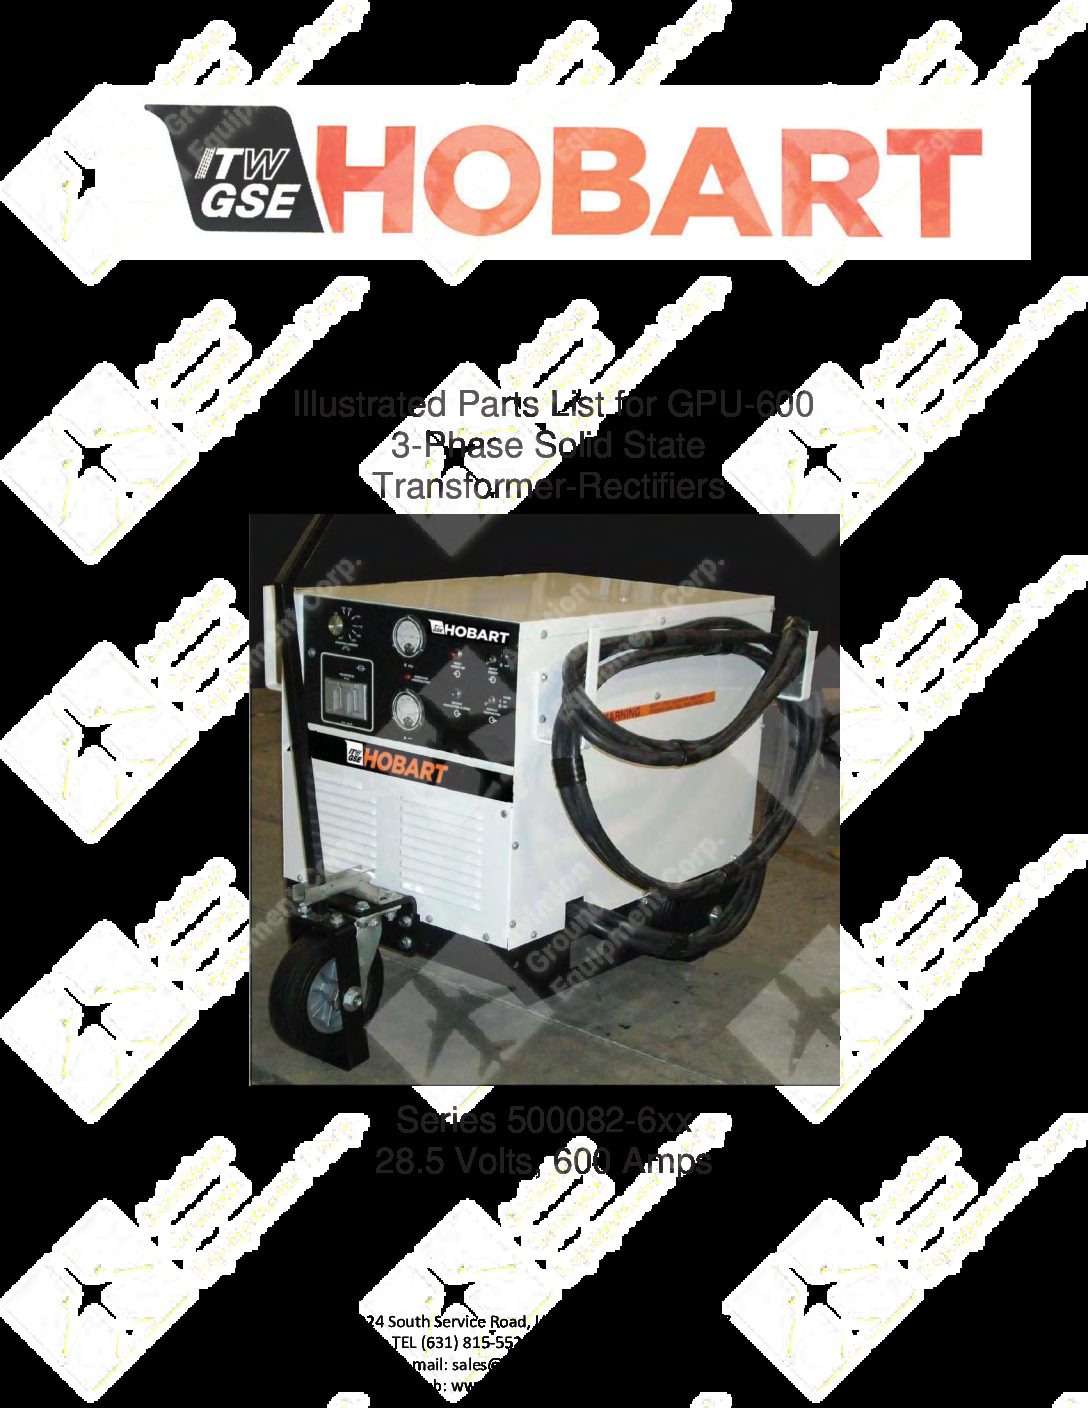 hobart equipment parts